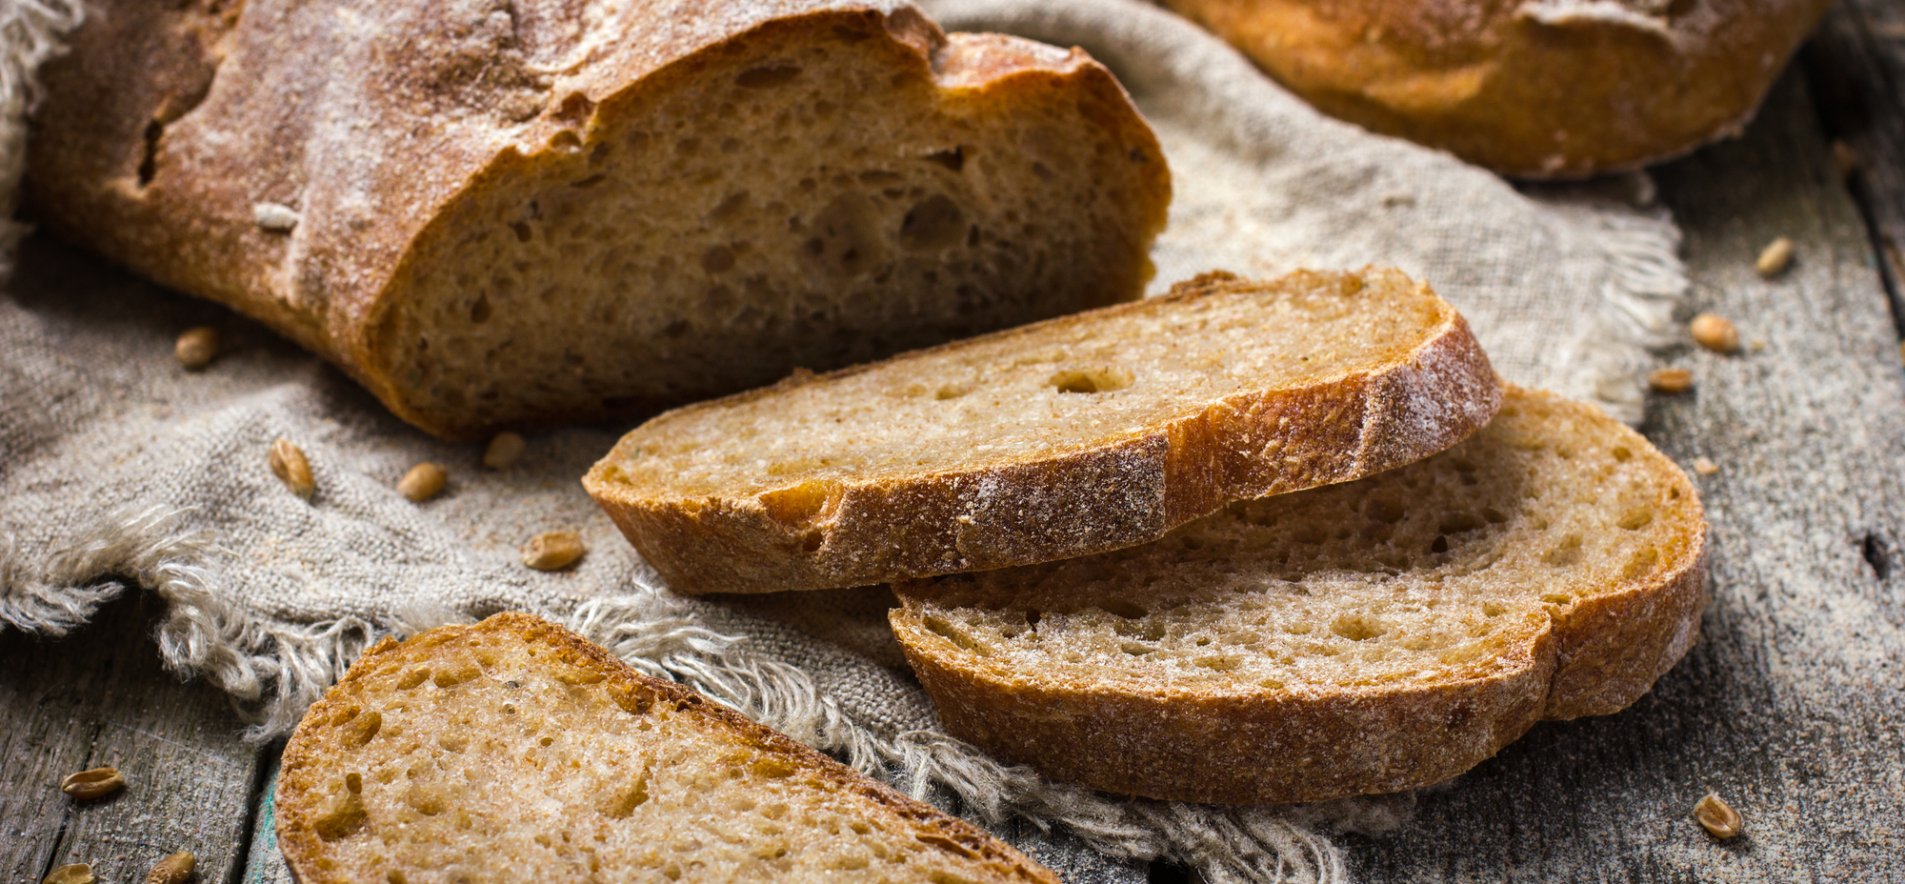 Хлеб с пшеничными отрубями